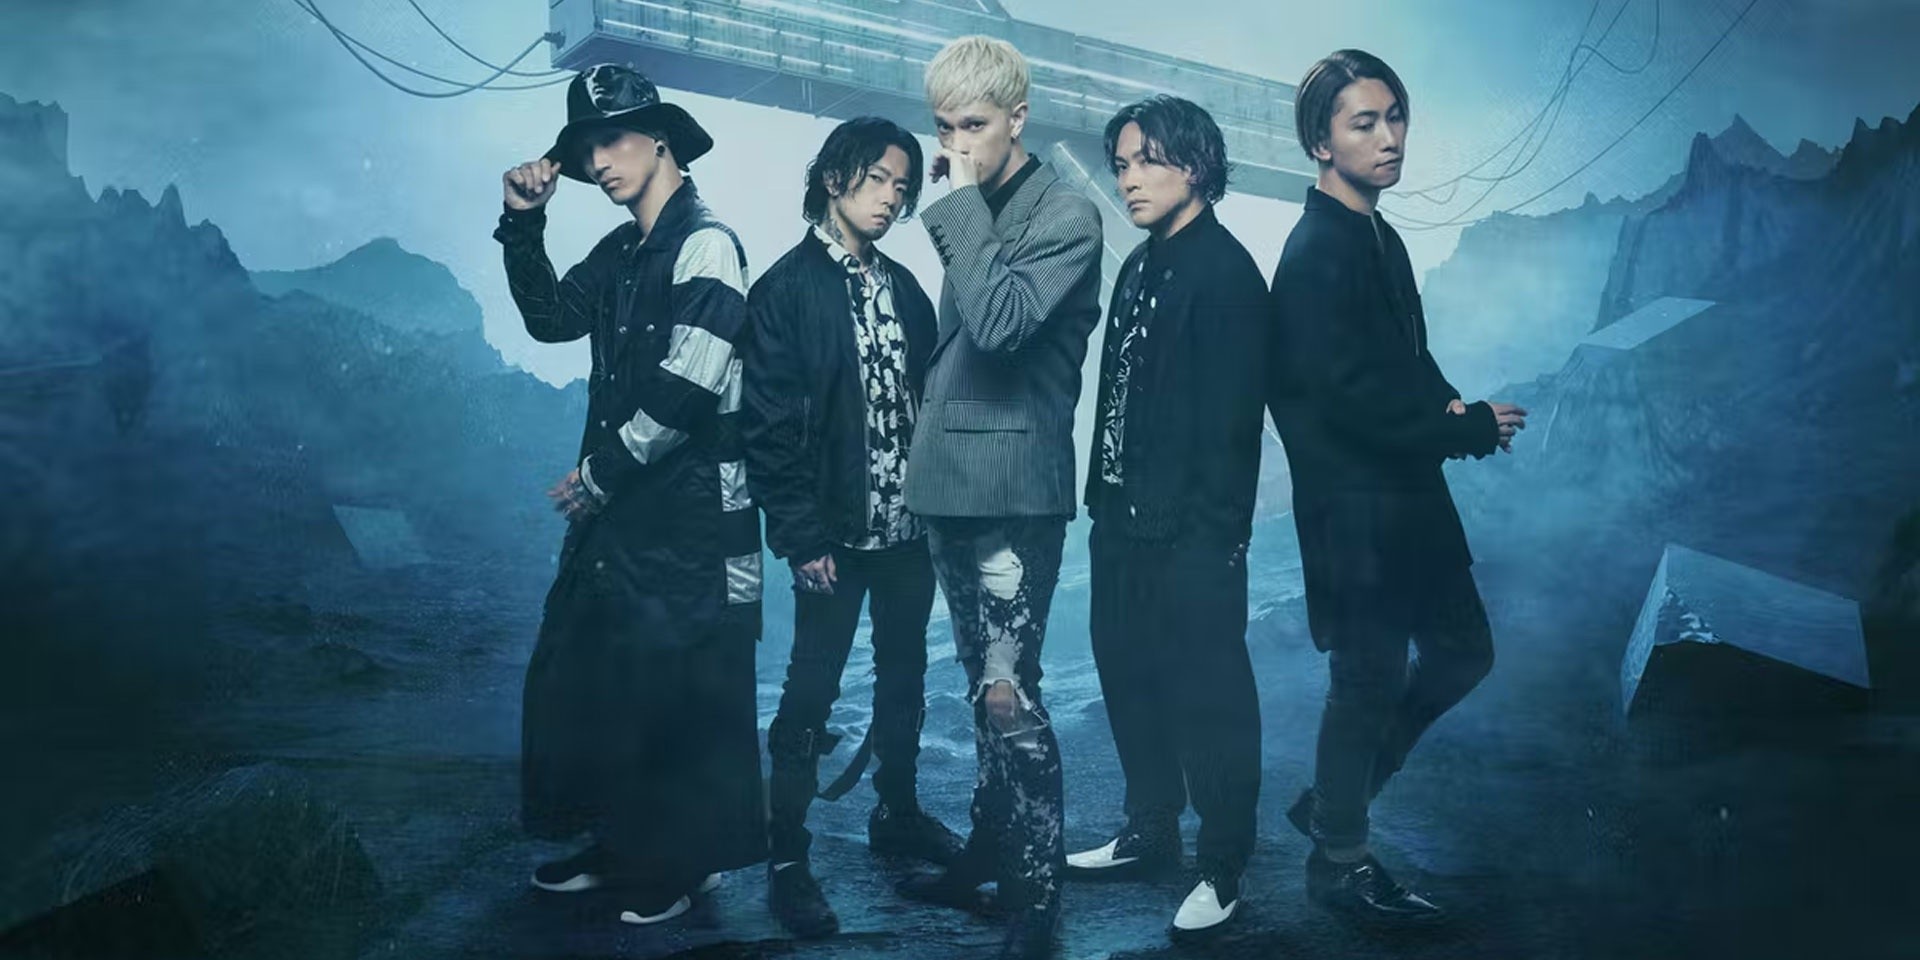 coldrain unveil new album 'Nonnegative', 'Cut Me' music video, announce Japan tour dates – listen